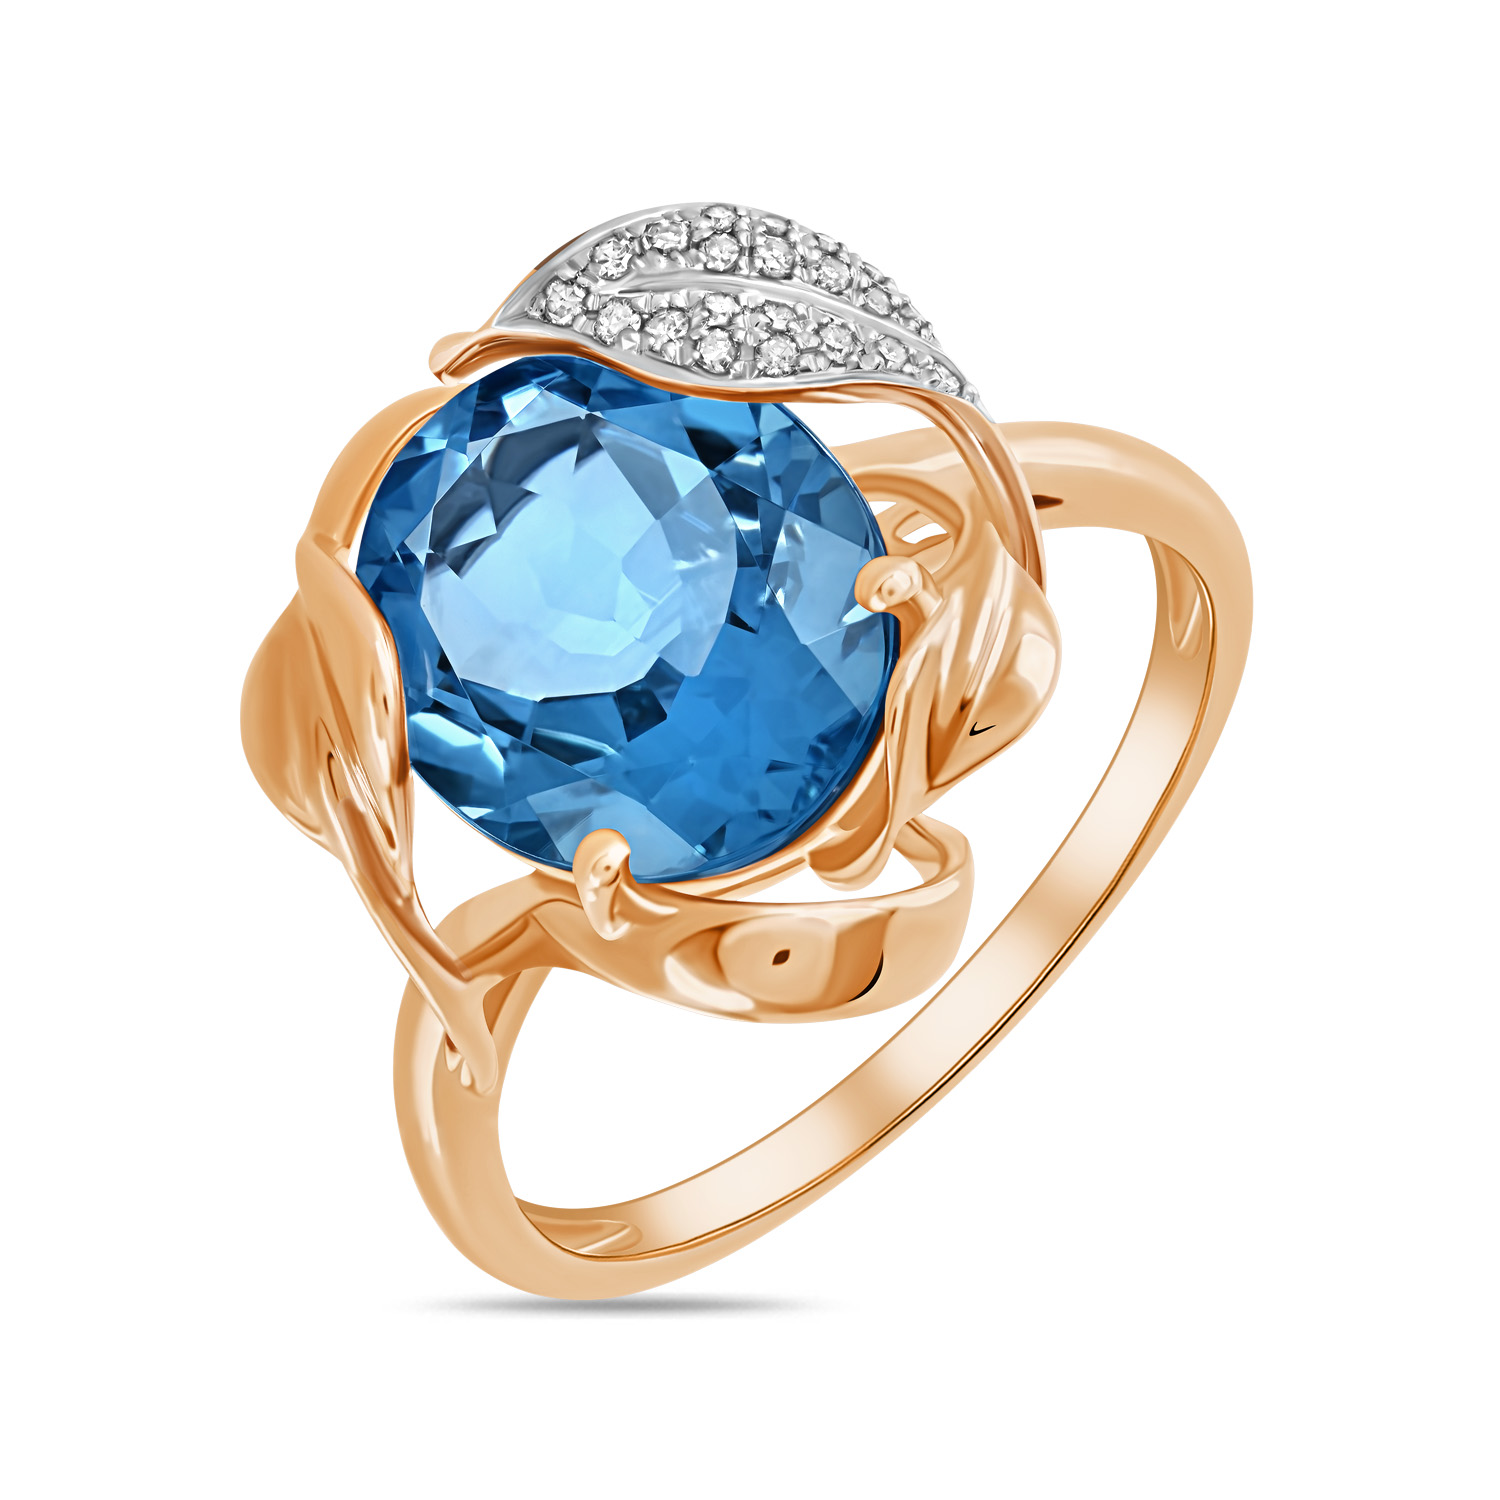 Кольца МЮЗ Золотое кольцо с топазом и бриллиантами кольца мюз золотое кольцо с топазом и бриллиантами